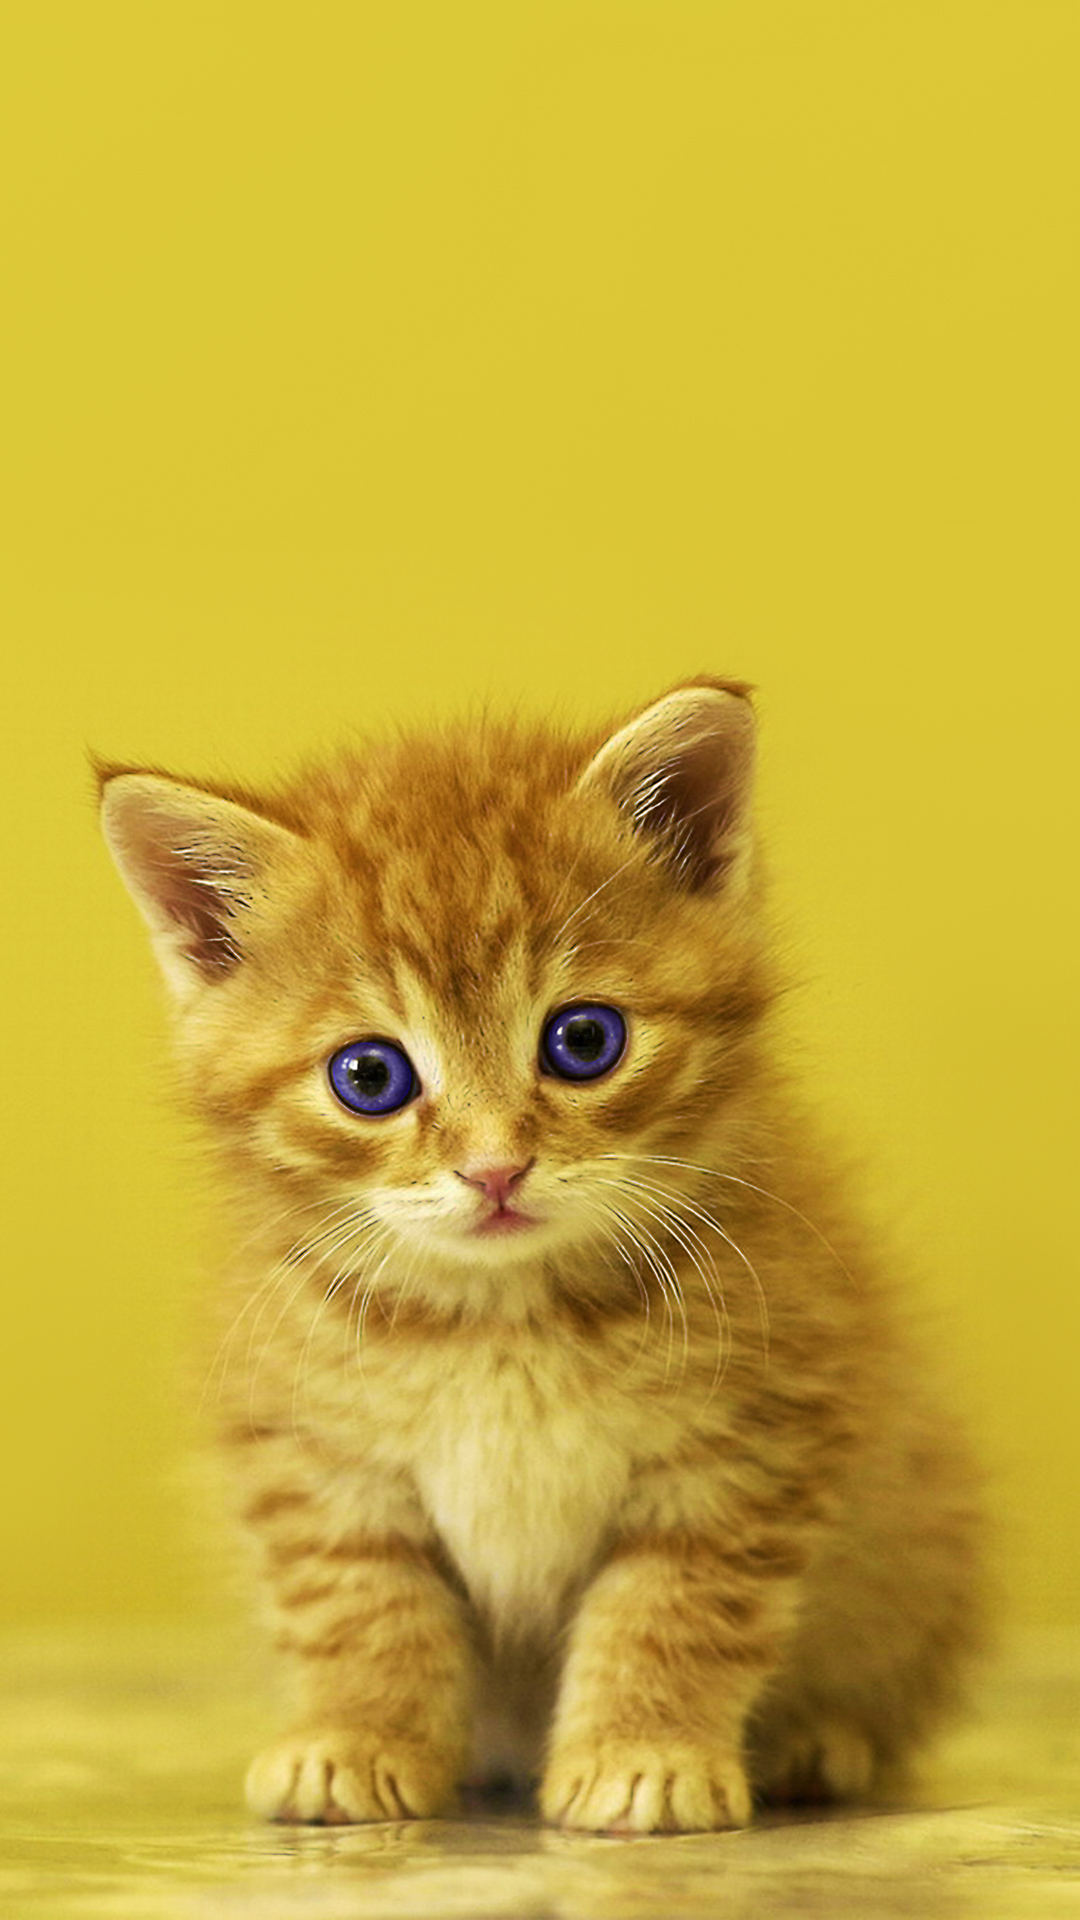 Images Of Kitten For My Phone Wallpaper - Kitten Wallpaper Hd For Mobile , HD Wallpaper & Backgrounds